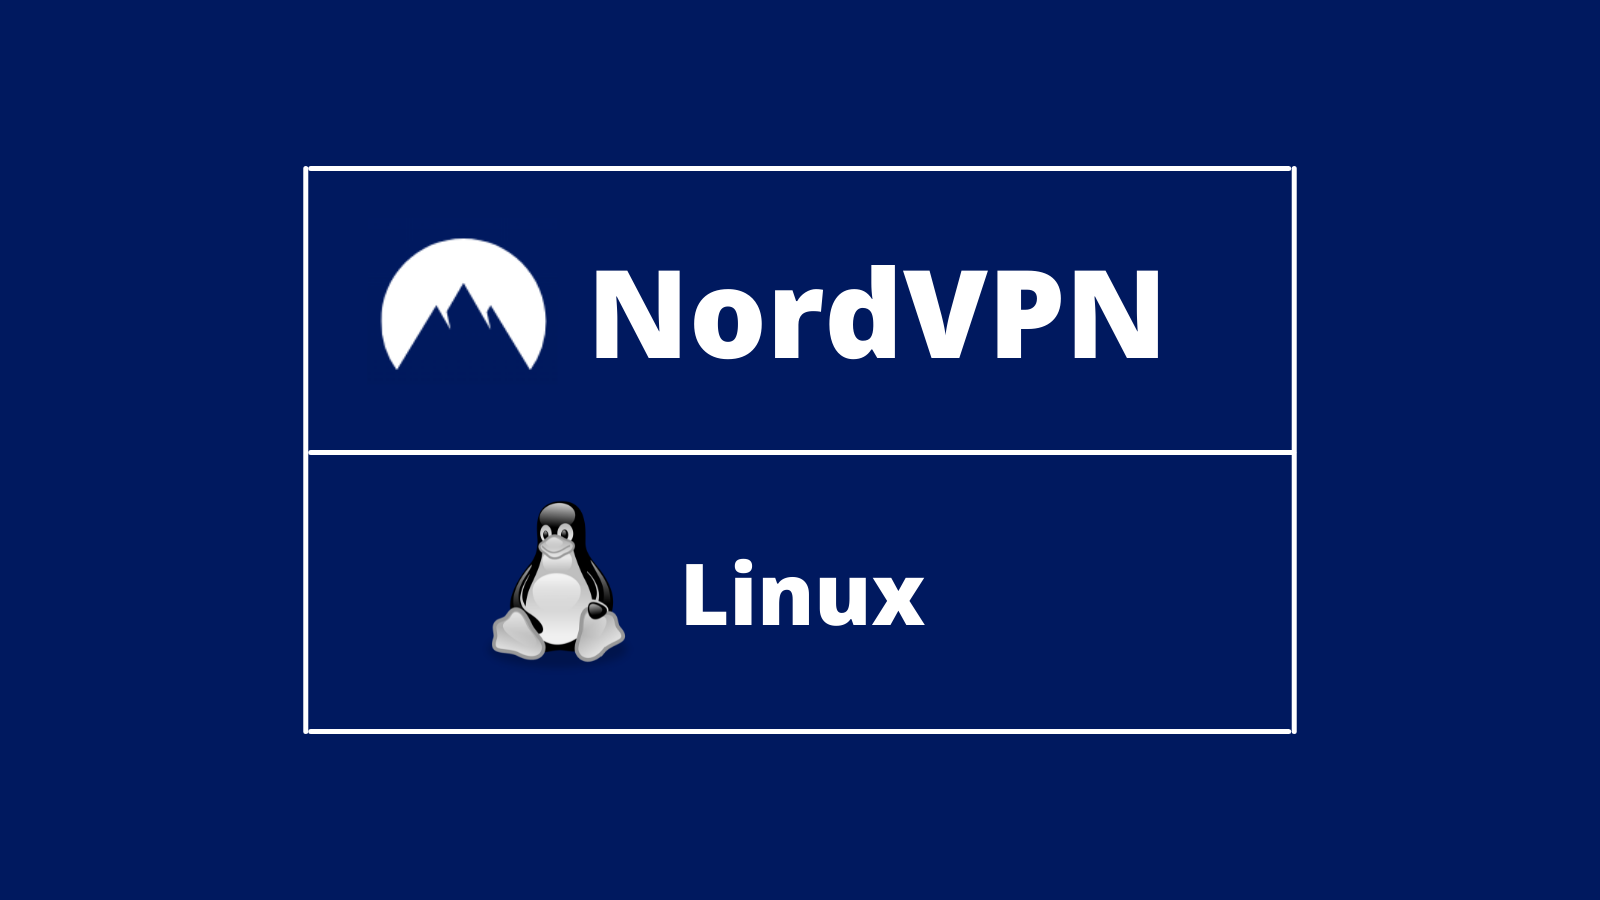 nordvpn linux app download